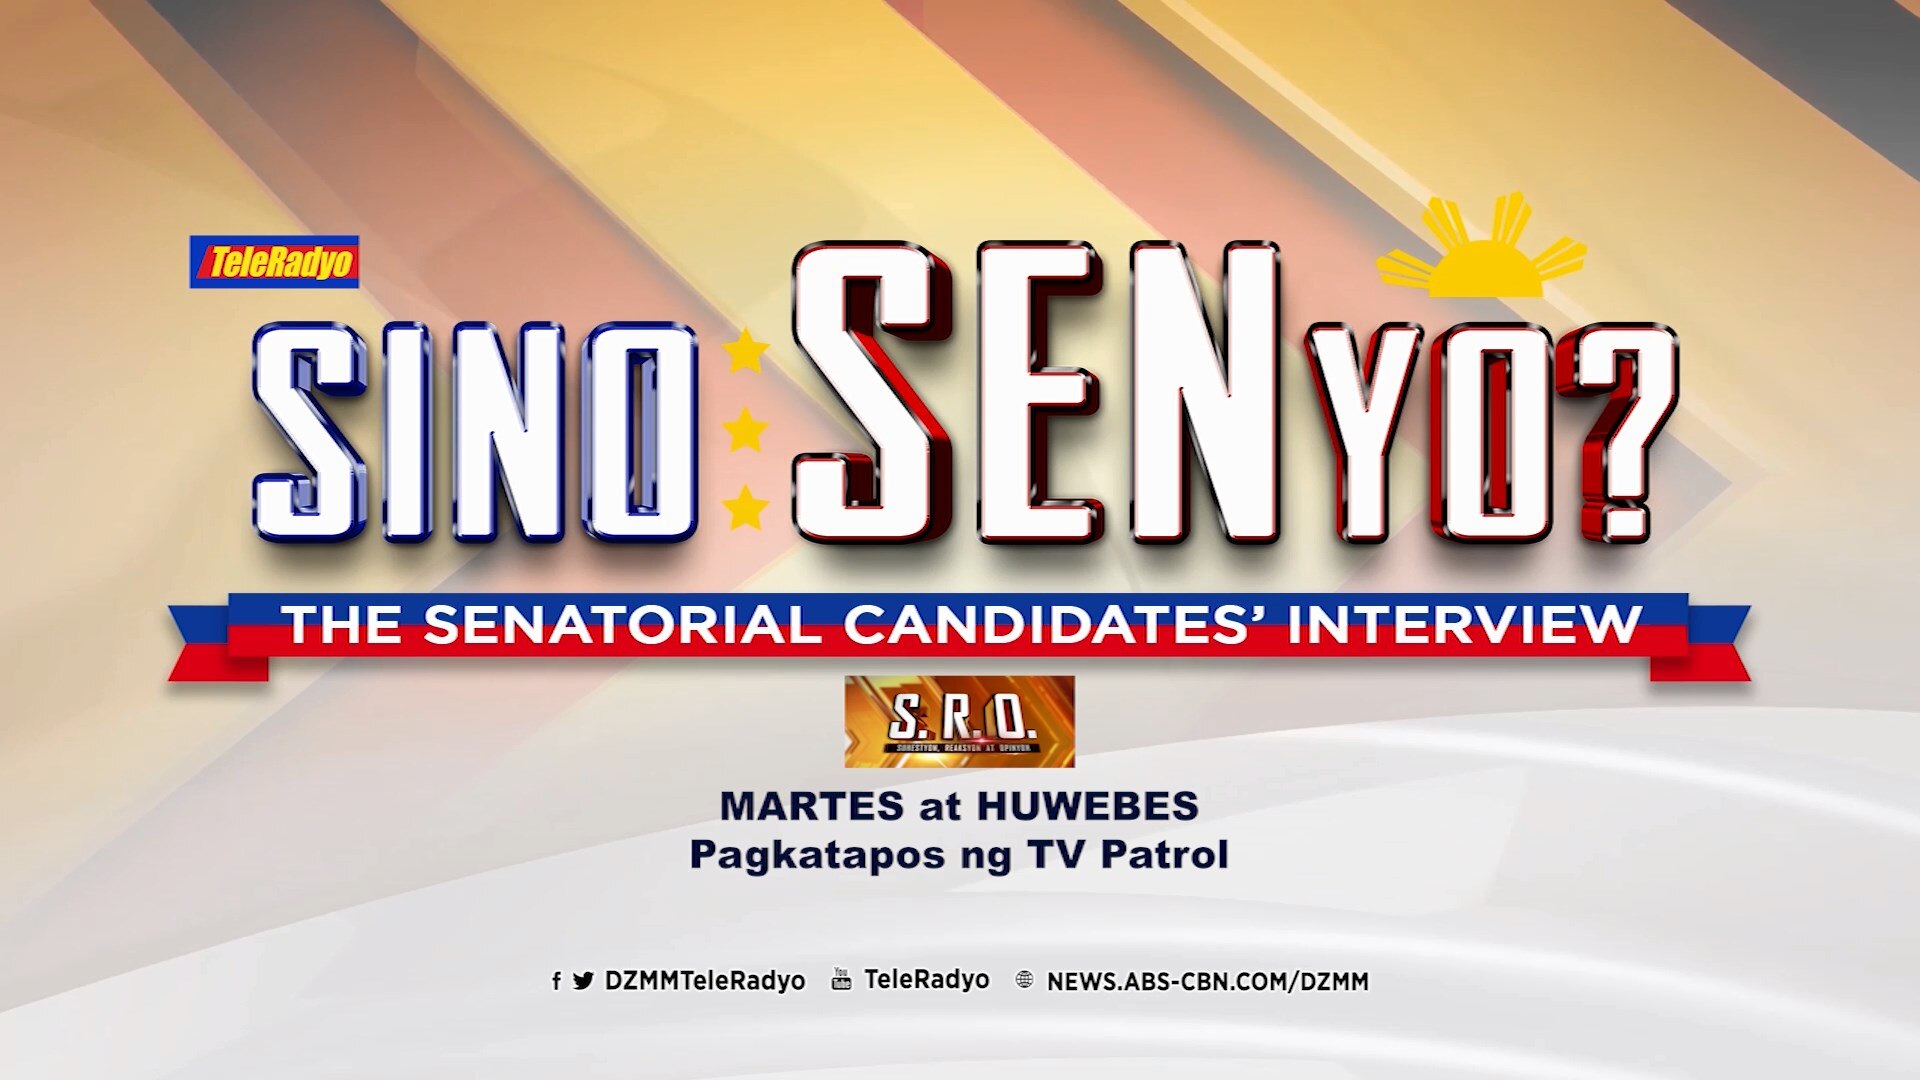 Samahan sina Alvin at Doris sa SRO para sa SINO SENYO The Senatorial Candidates' Interview